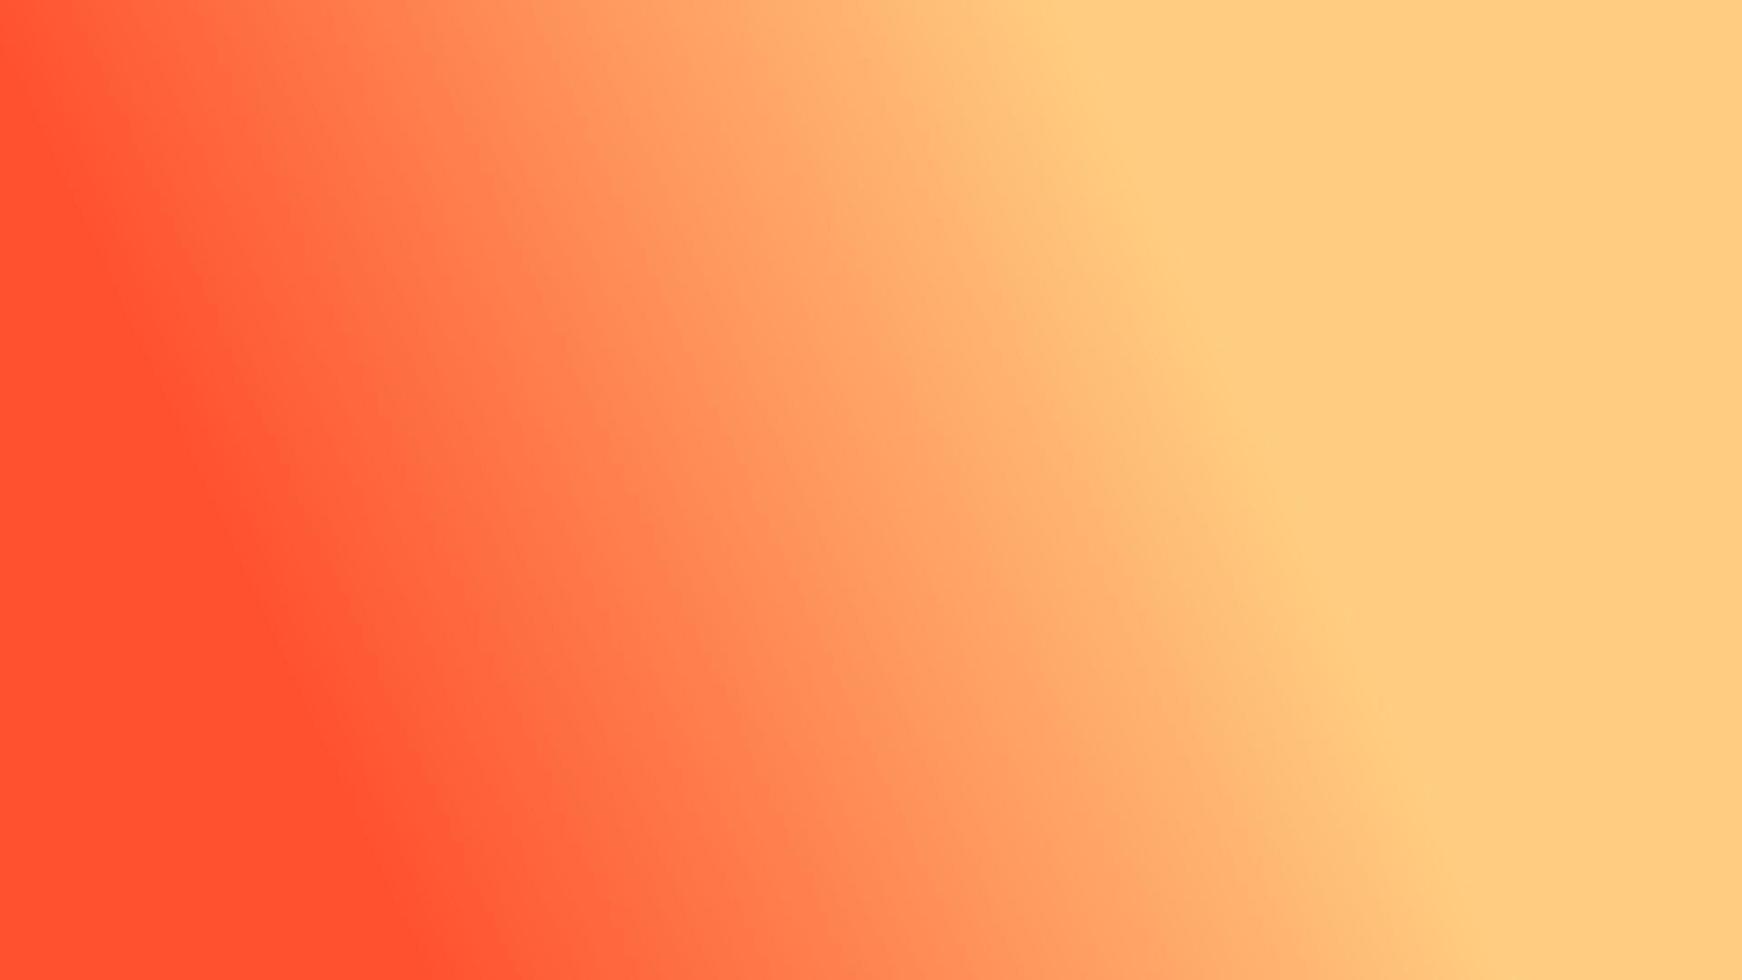 abstrakte moderne bunte gelbe und orange Steigungshintergrundillustration, vervollkommnen für Tapete, Hintergrund, Postkarte, Hintergrund, Fahne, Abdeckung vektor